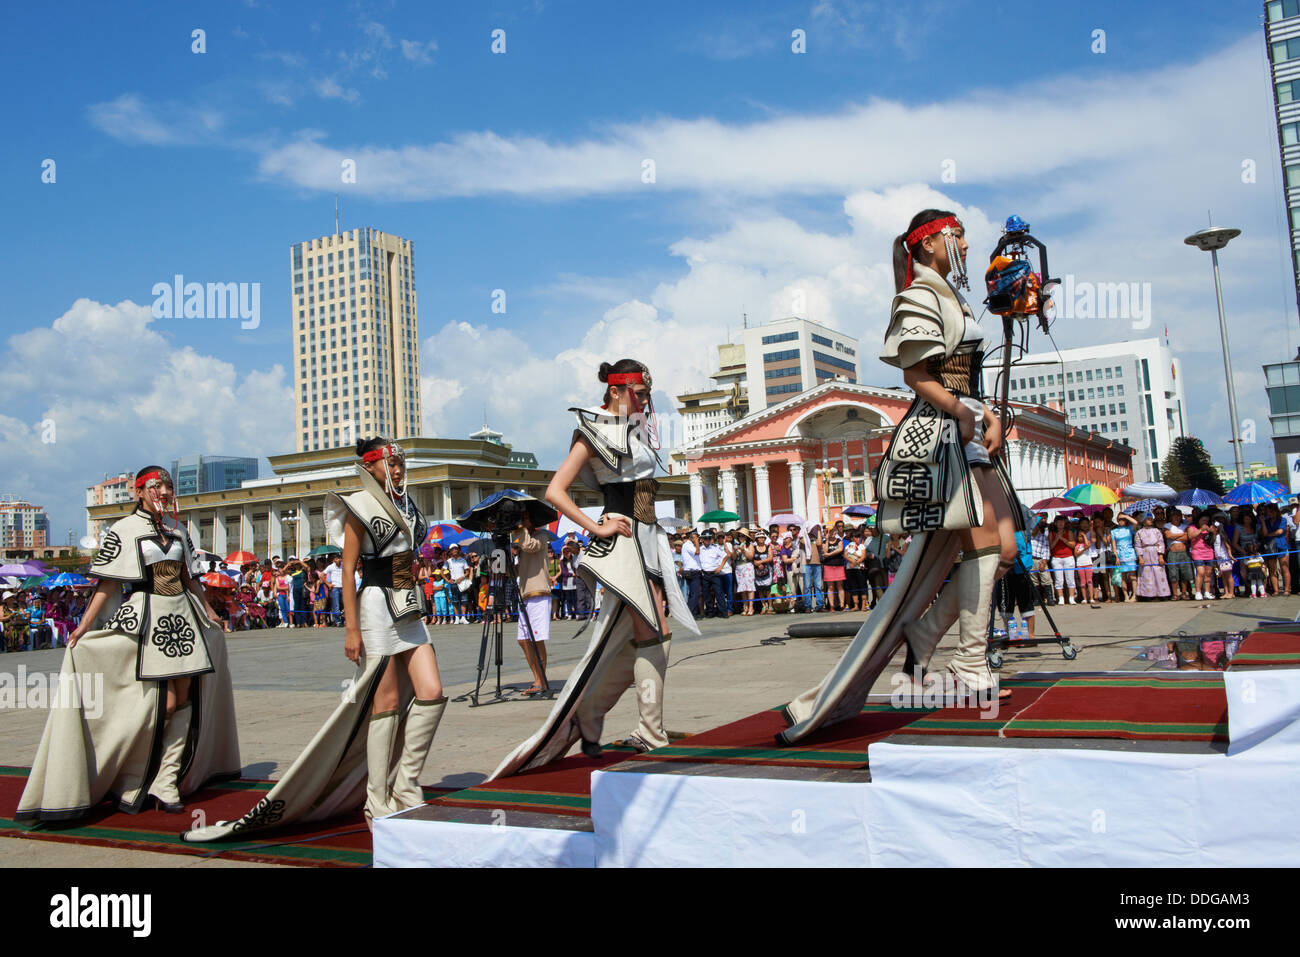 La Mongolie, Oulan Bator, Sukhbaatar Square, parade de costumes pour le festival Naadam, fashion show Banque D'Images